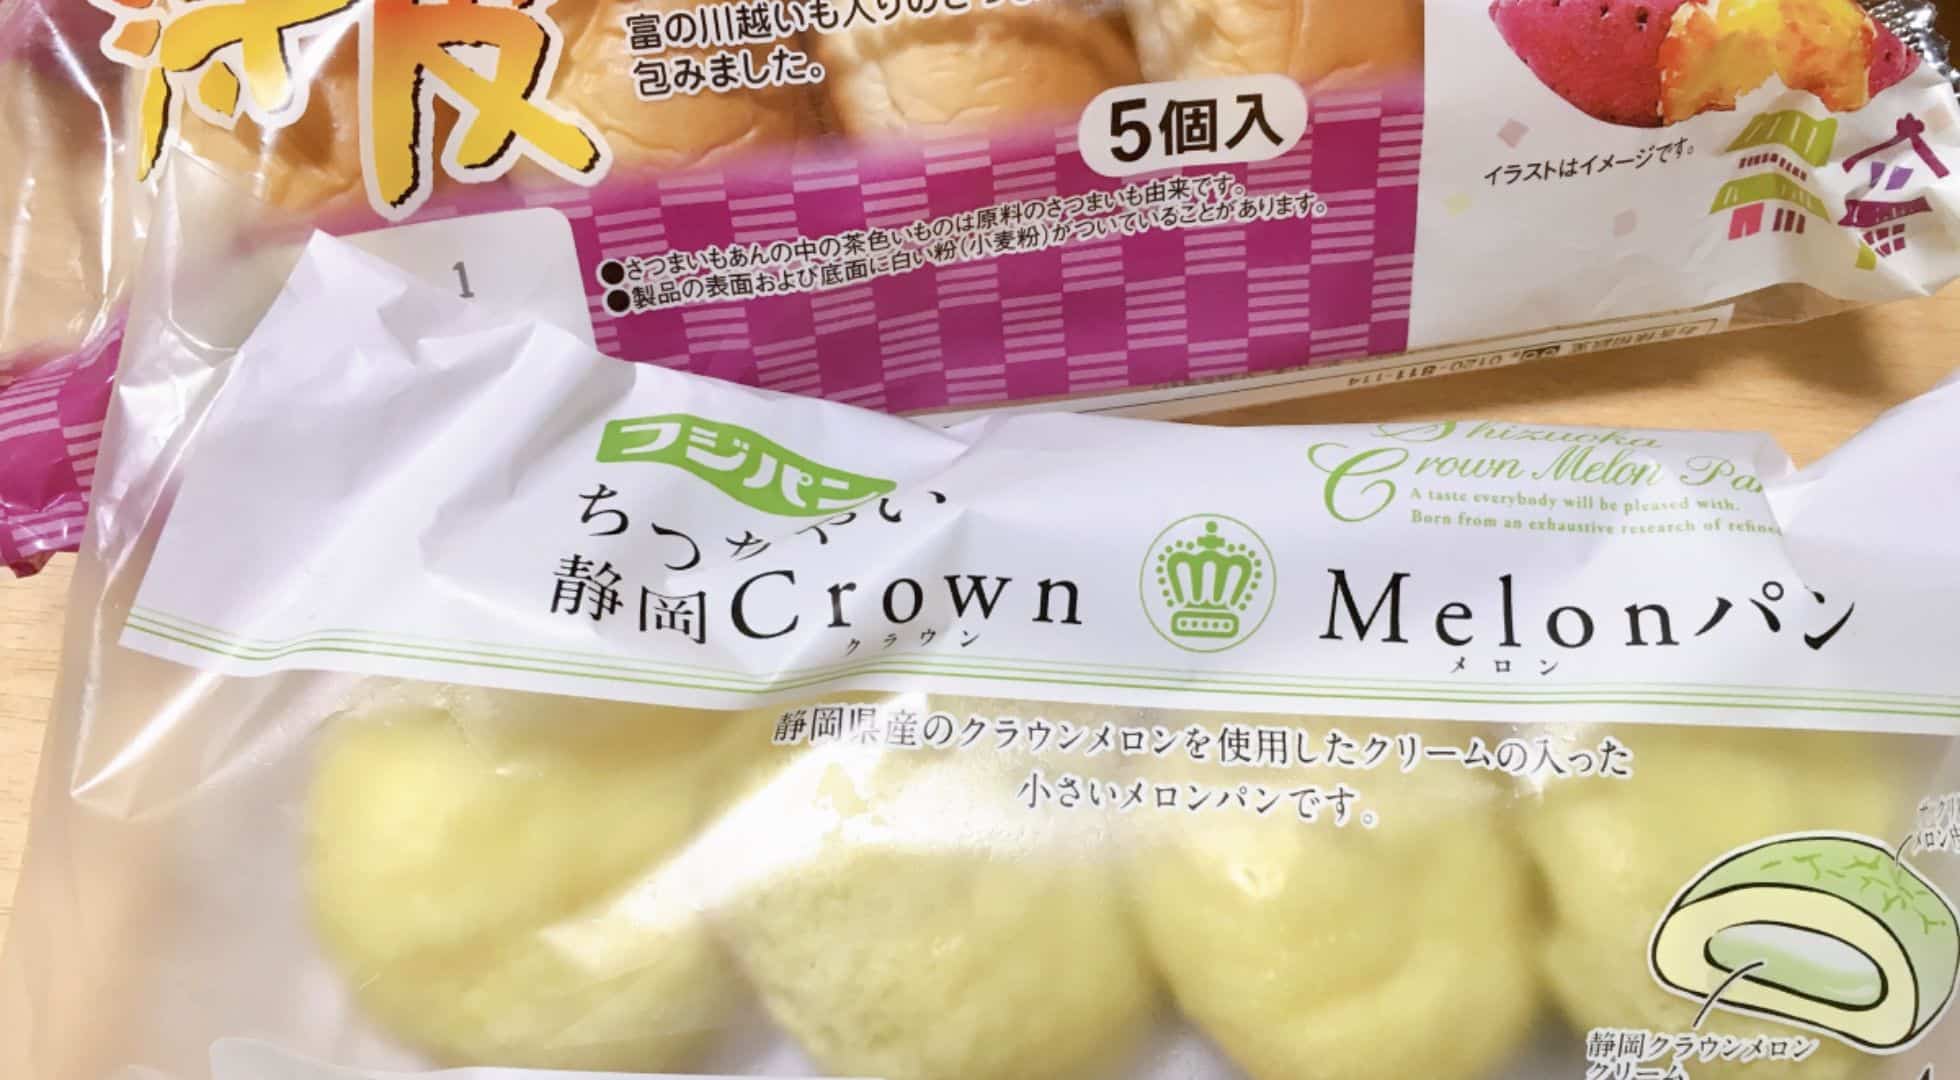 melon-bread